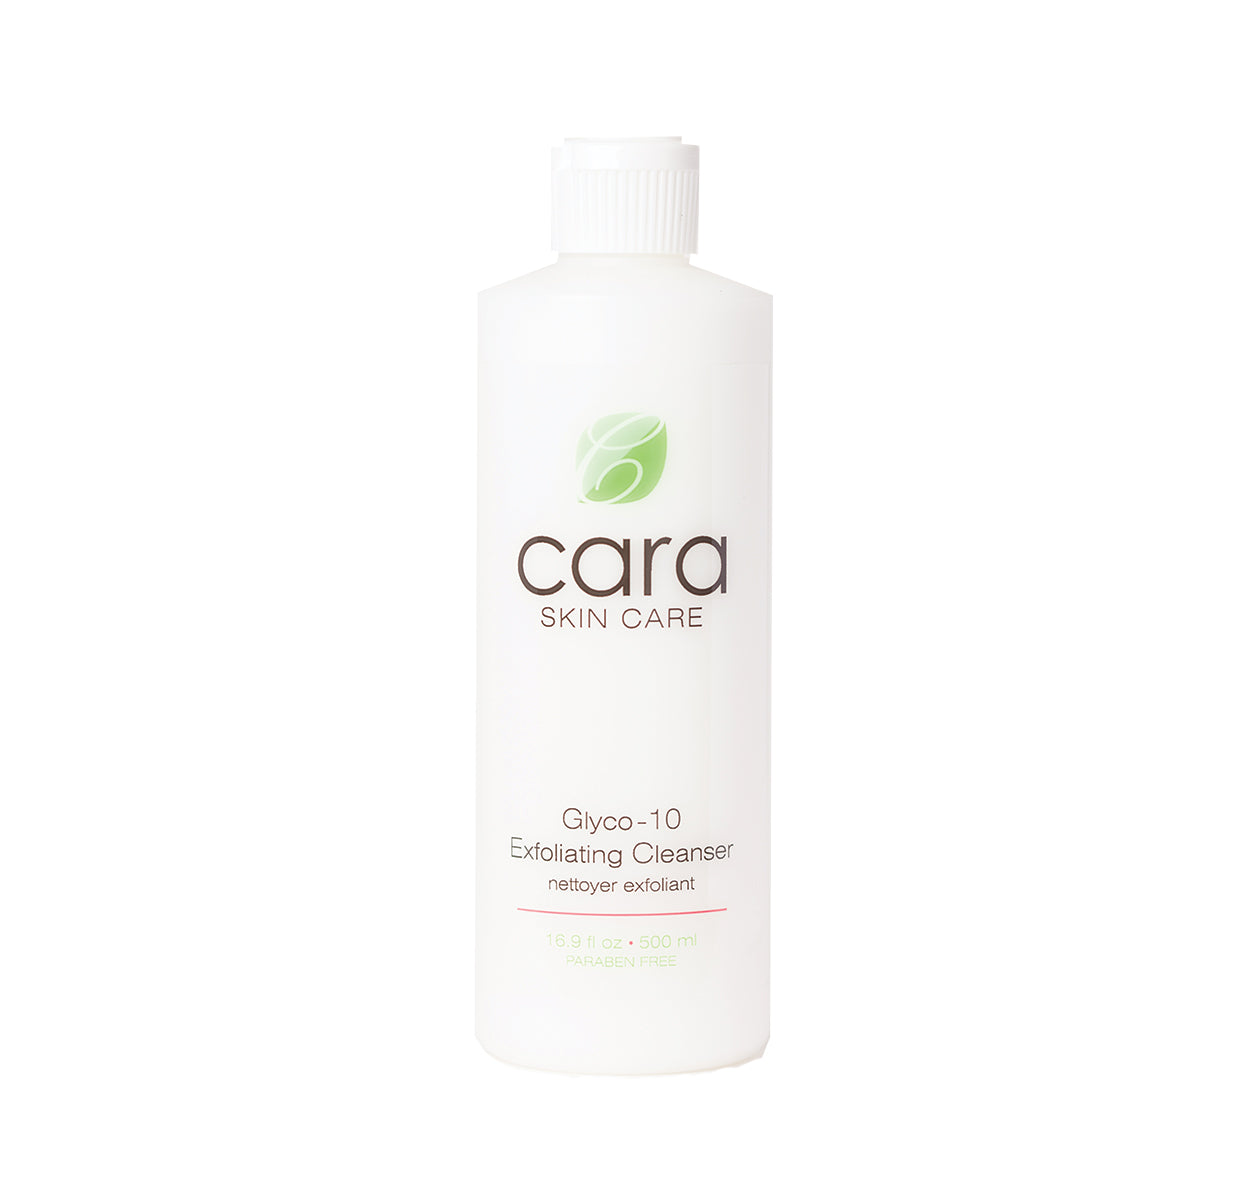 Cara Skin Care Glyco-10 Exfoliating Cleanser, 500 ml/16.9 fl oz